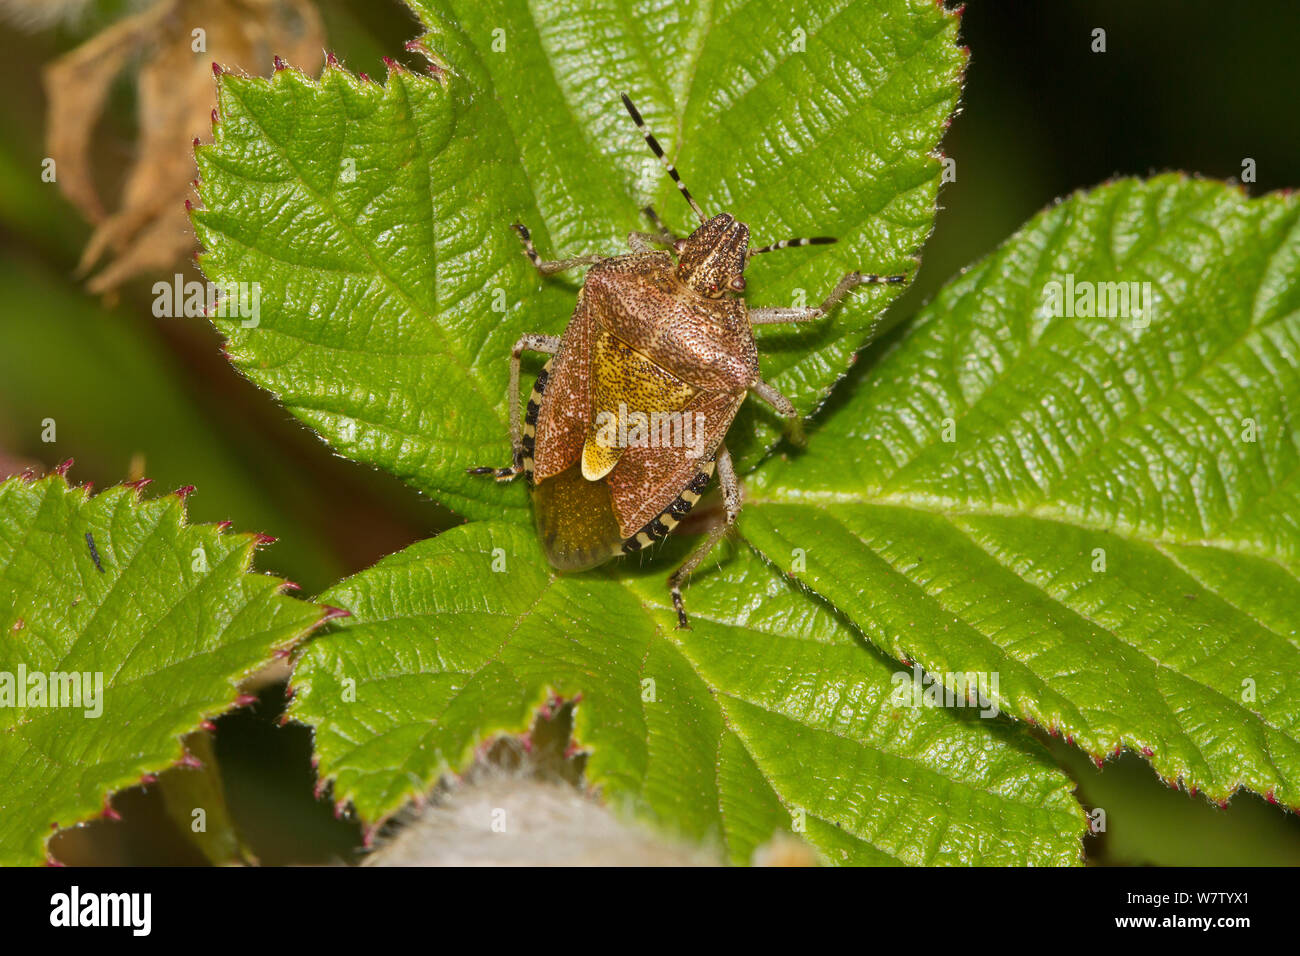 Sloe bug (Dolycoris baccarum) on bramble leaf, Hutchinson's Bank, New Addington, London, UK, August. Stock Photo